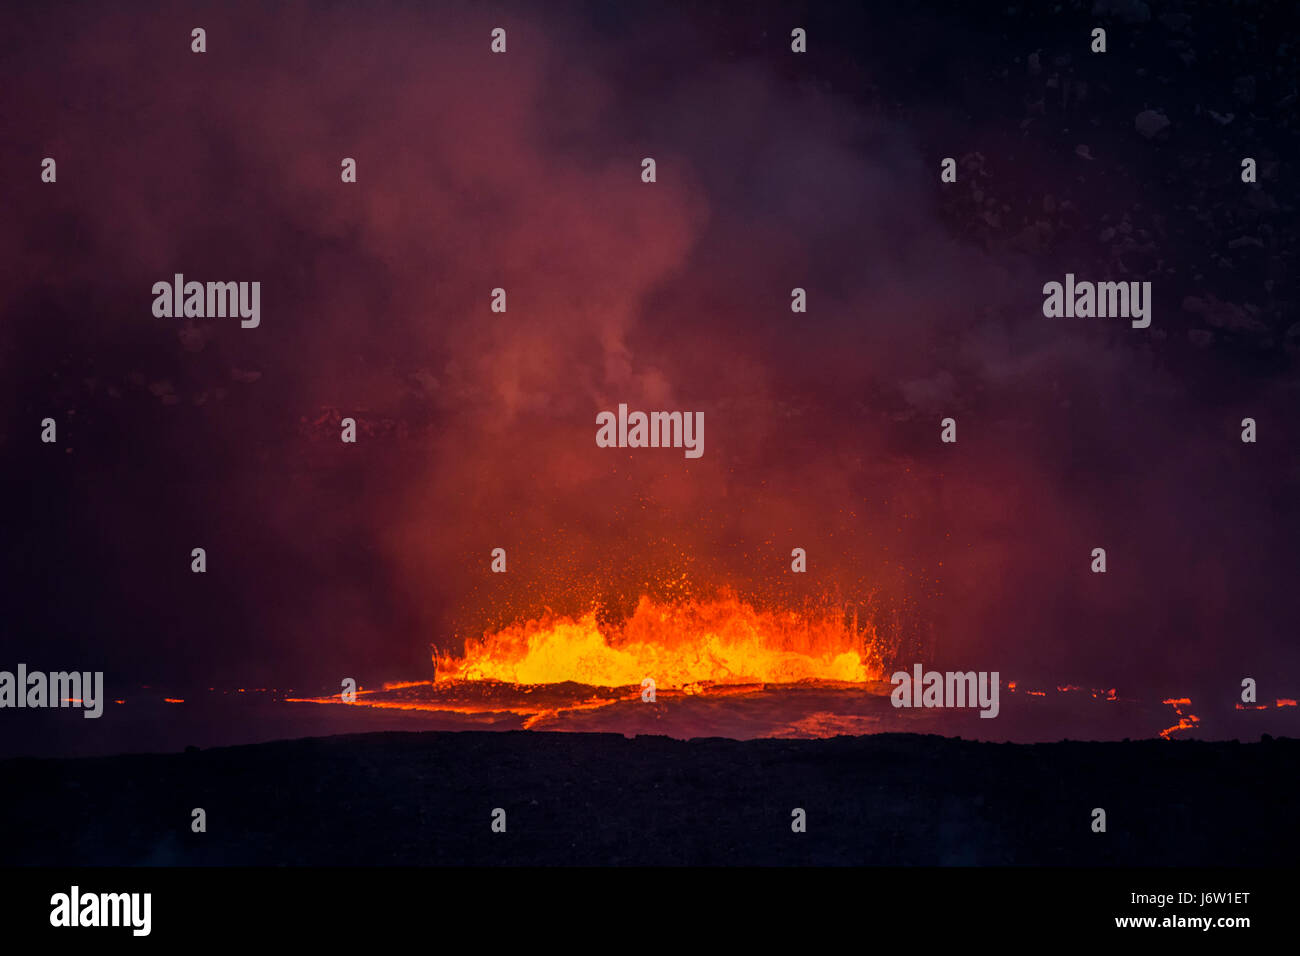 Kochendes, ausbrechender Lava in die Caldera des Vulkans Kilauea schießt Magma in die Luft und erzeugt große Mengen an Dampf aus der heißen Flüssigkeit. Stockfoto